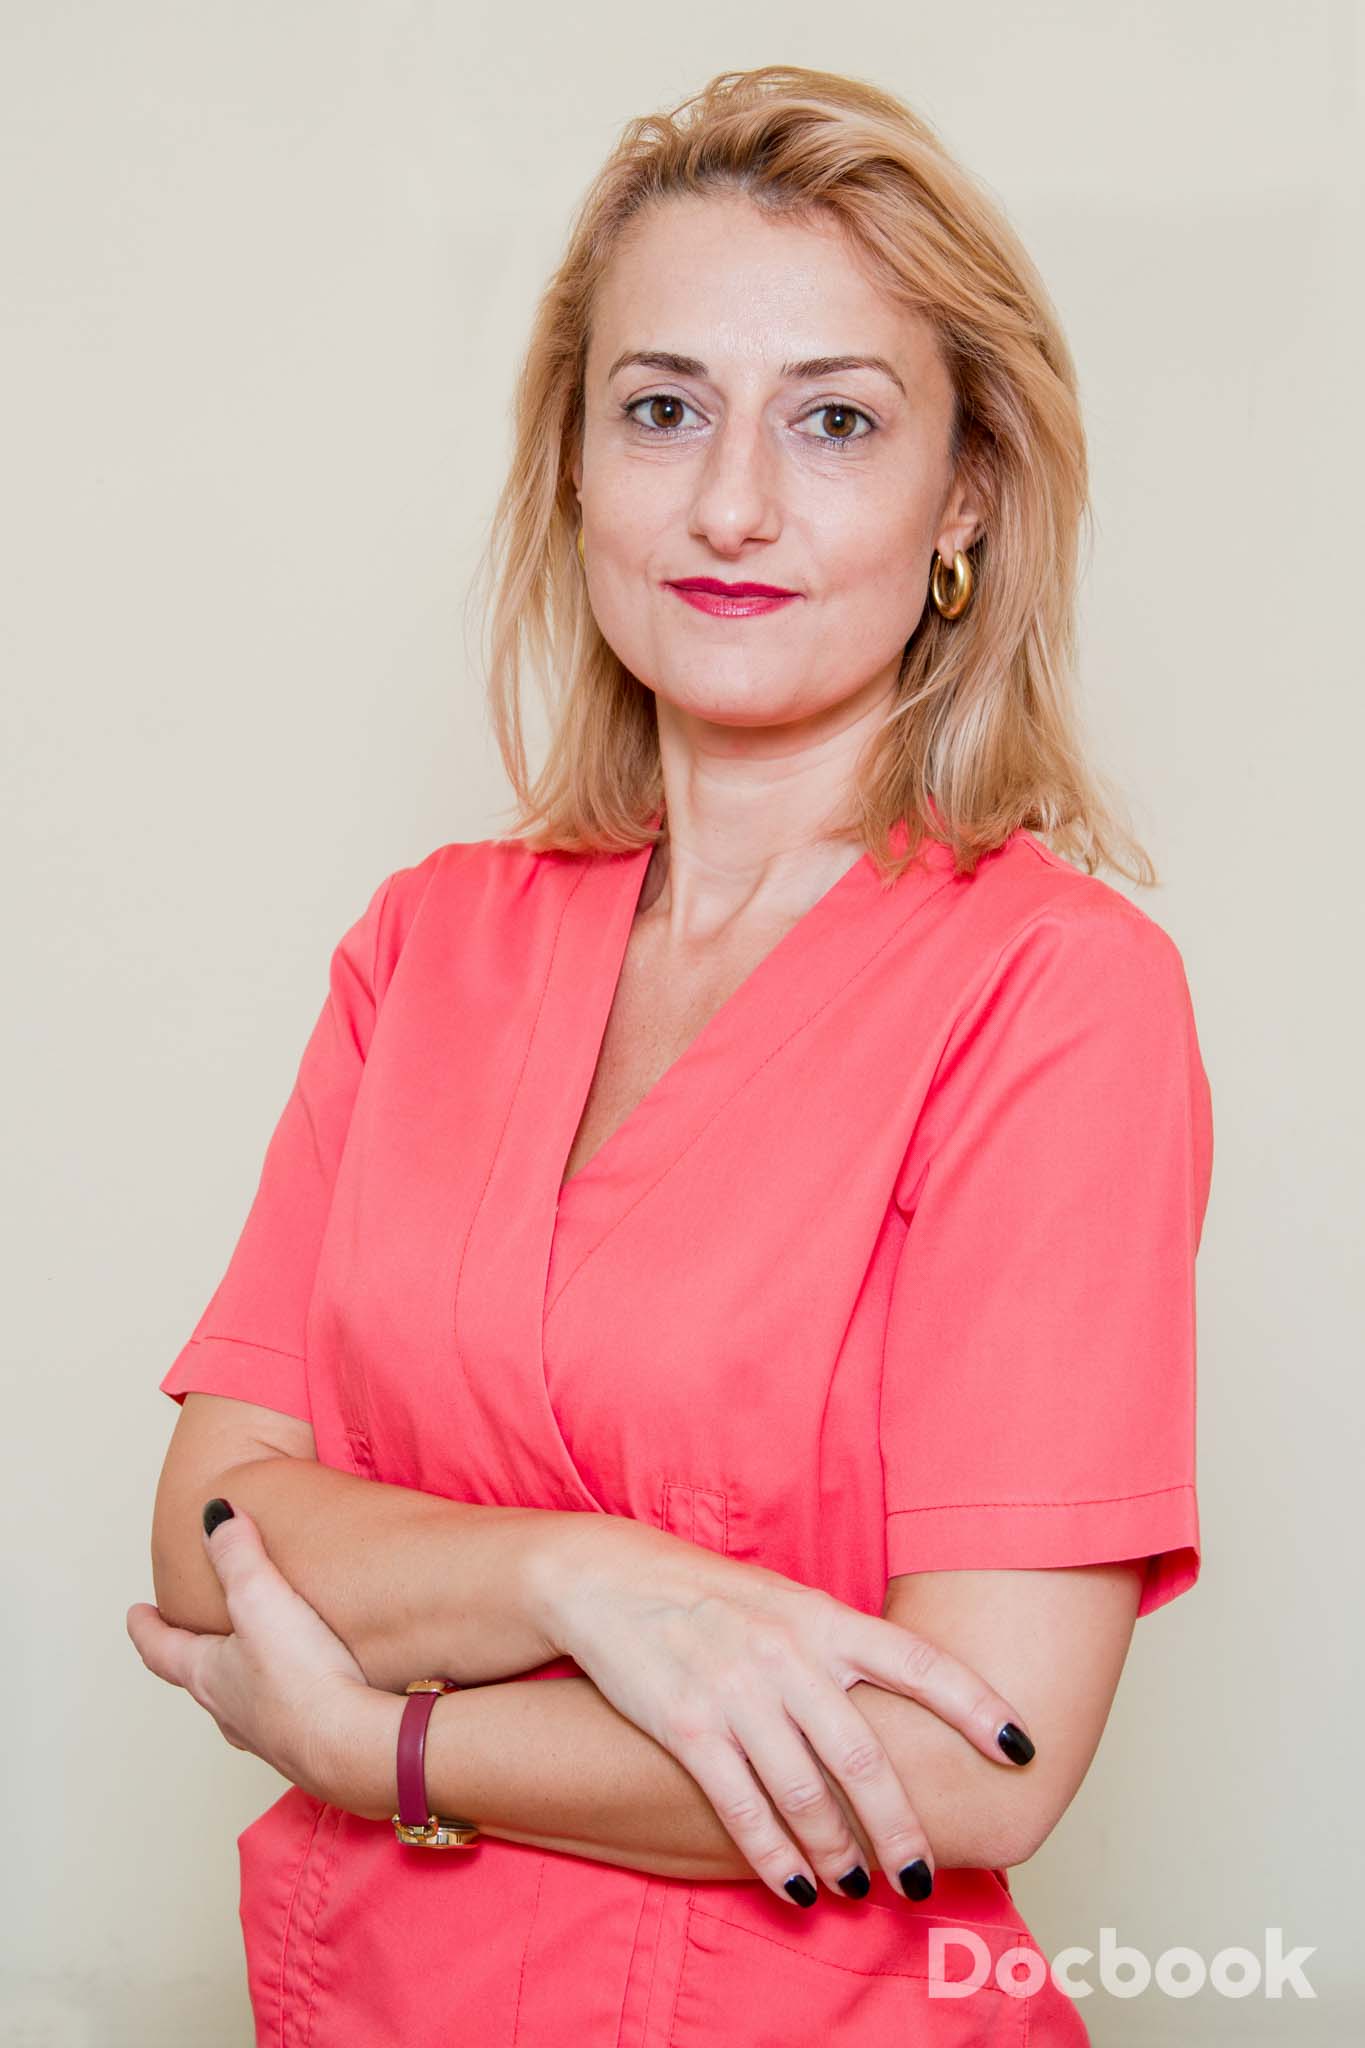 Dr. Cezarina Voichitoiu